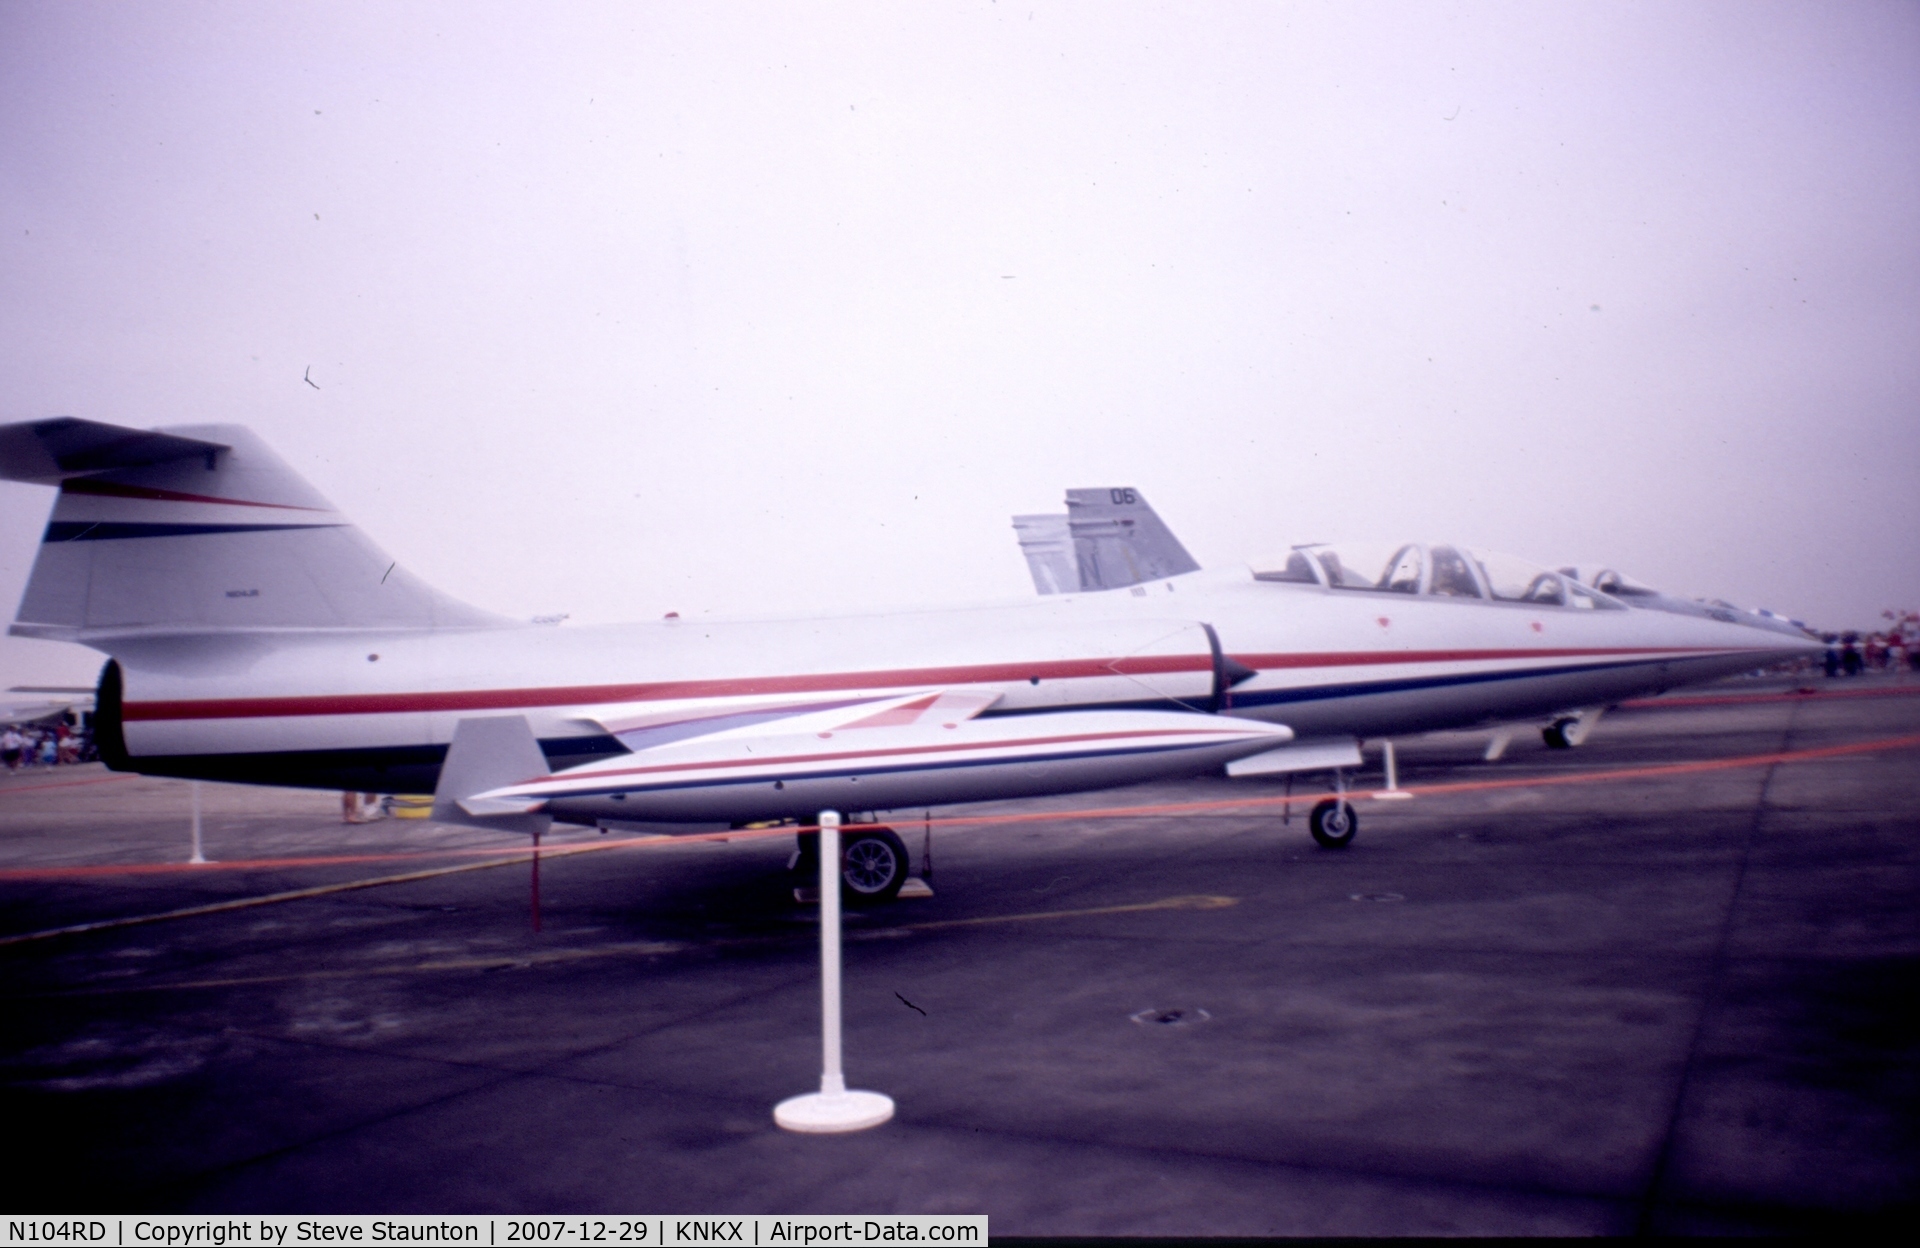 N104RD, 1963 Lockheed CF-104G C/N 104850, Taken at NAS Miramar Airshow in 1988 (scan of a slide) - registered as N104JR